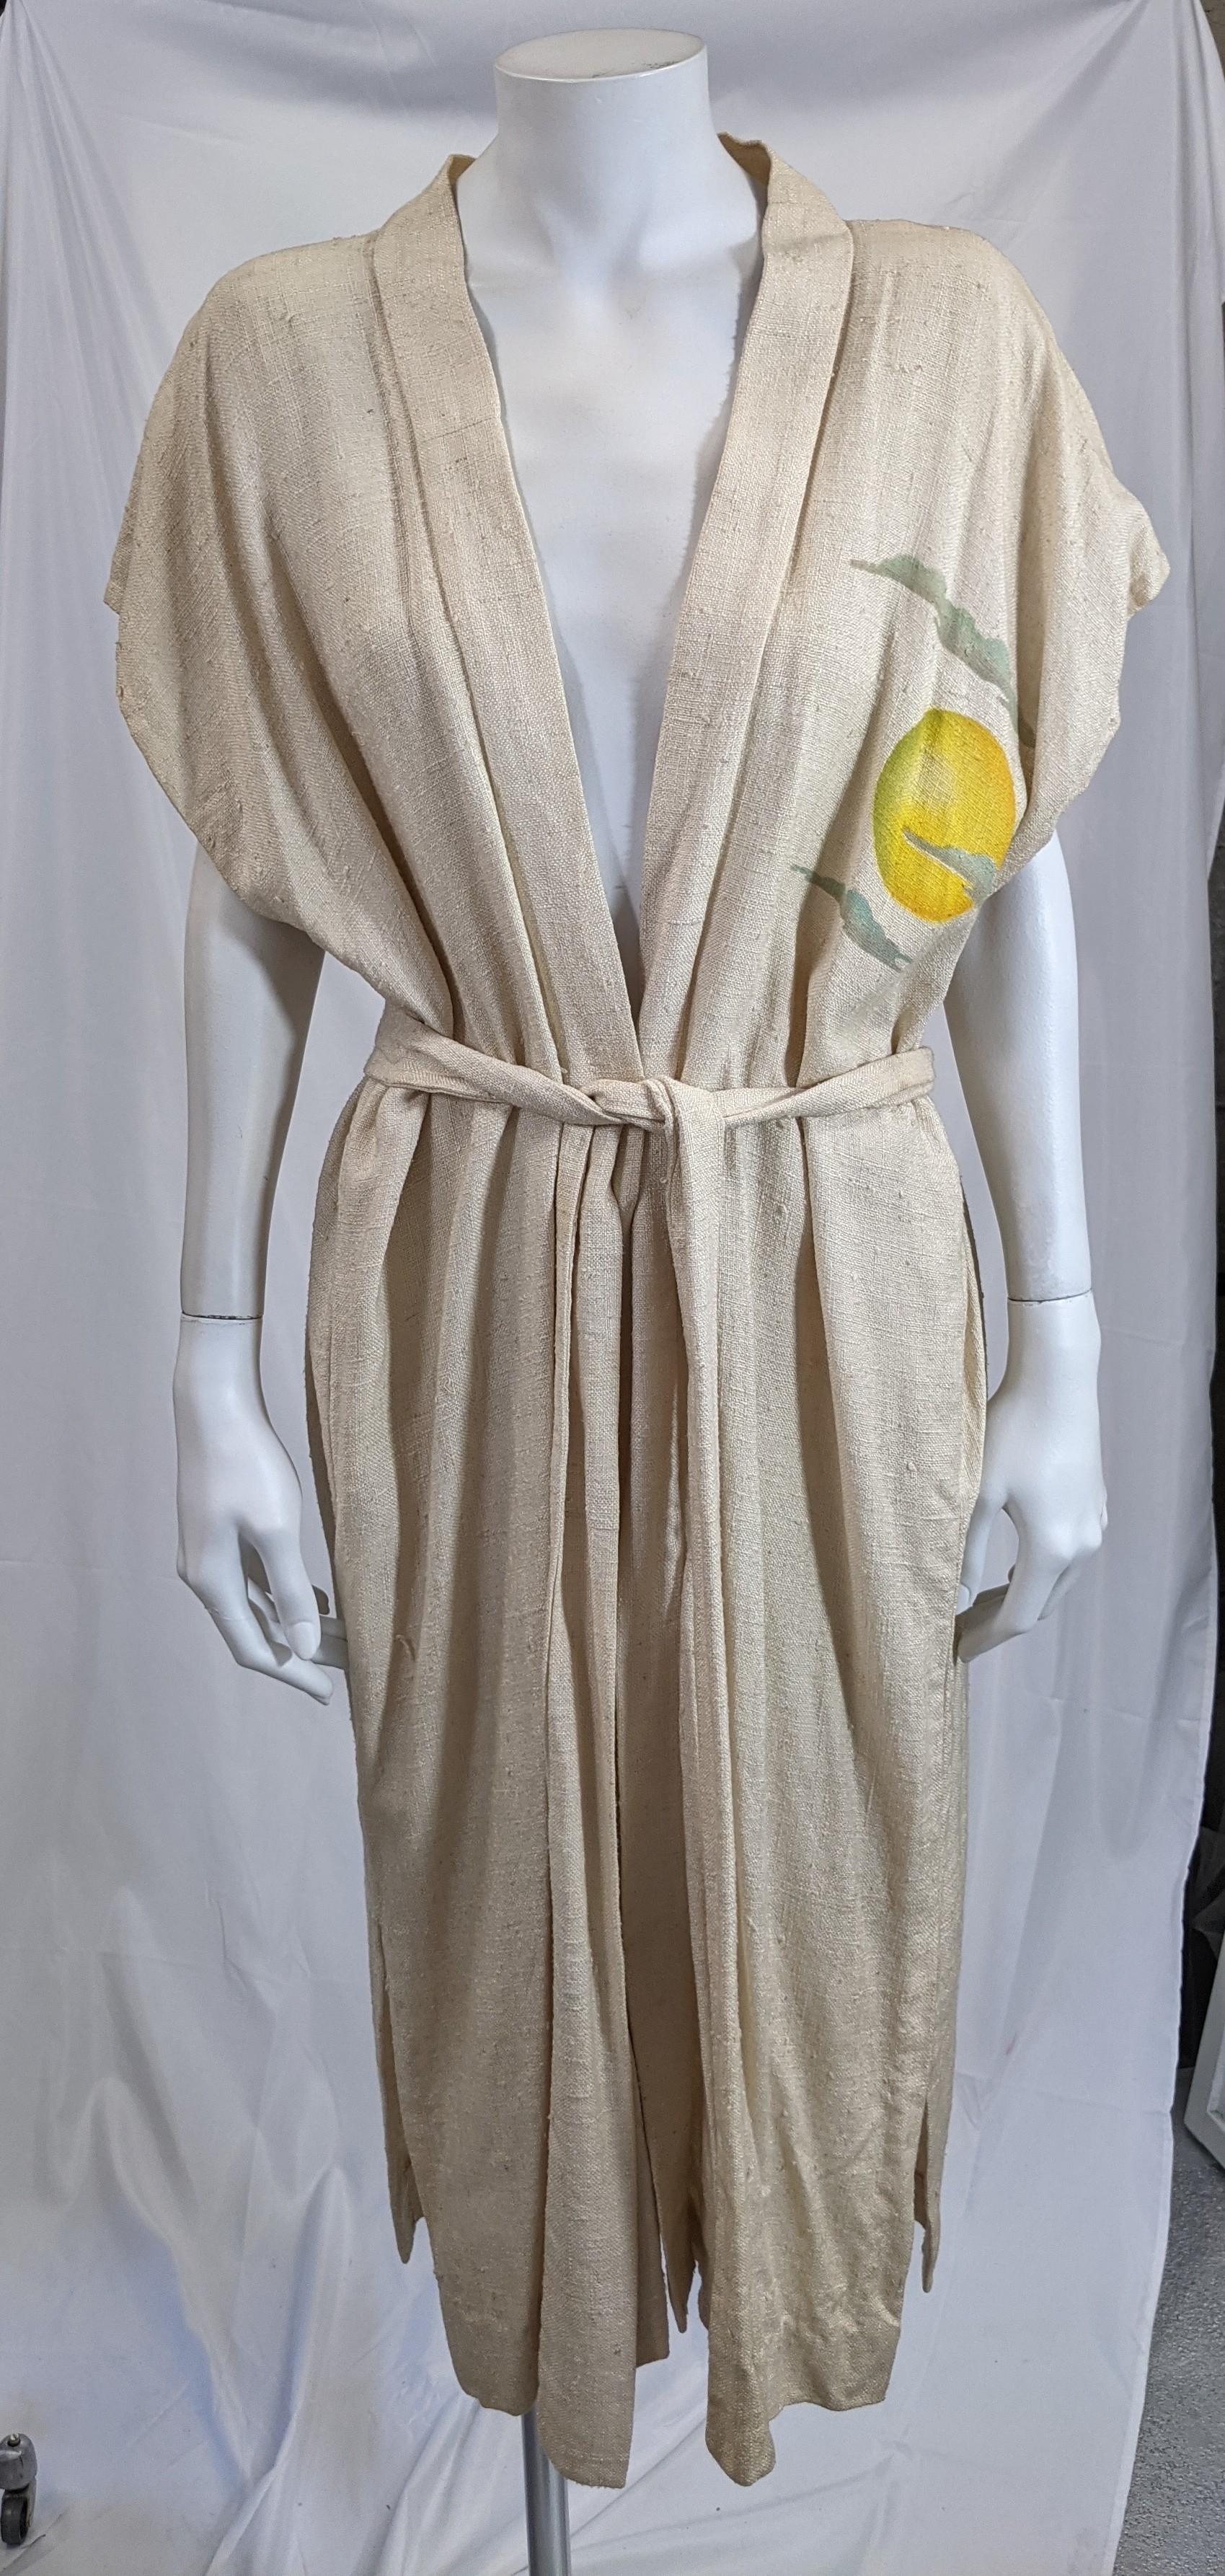 Saisissante et inhabituelle robe de chambre Art déco de forme rectangulaire simple avec ceinture automatique, en soie brute tussah. Le dos du vêtement est orné au pochoir et à la brosse à air d'une figure moderniste déco d'une femme guerrière sur